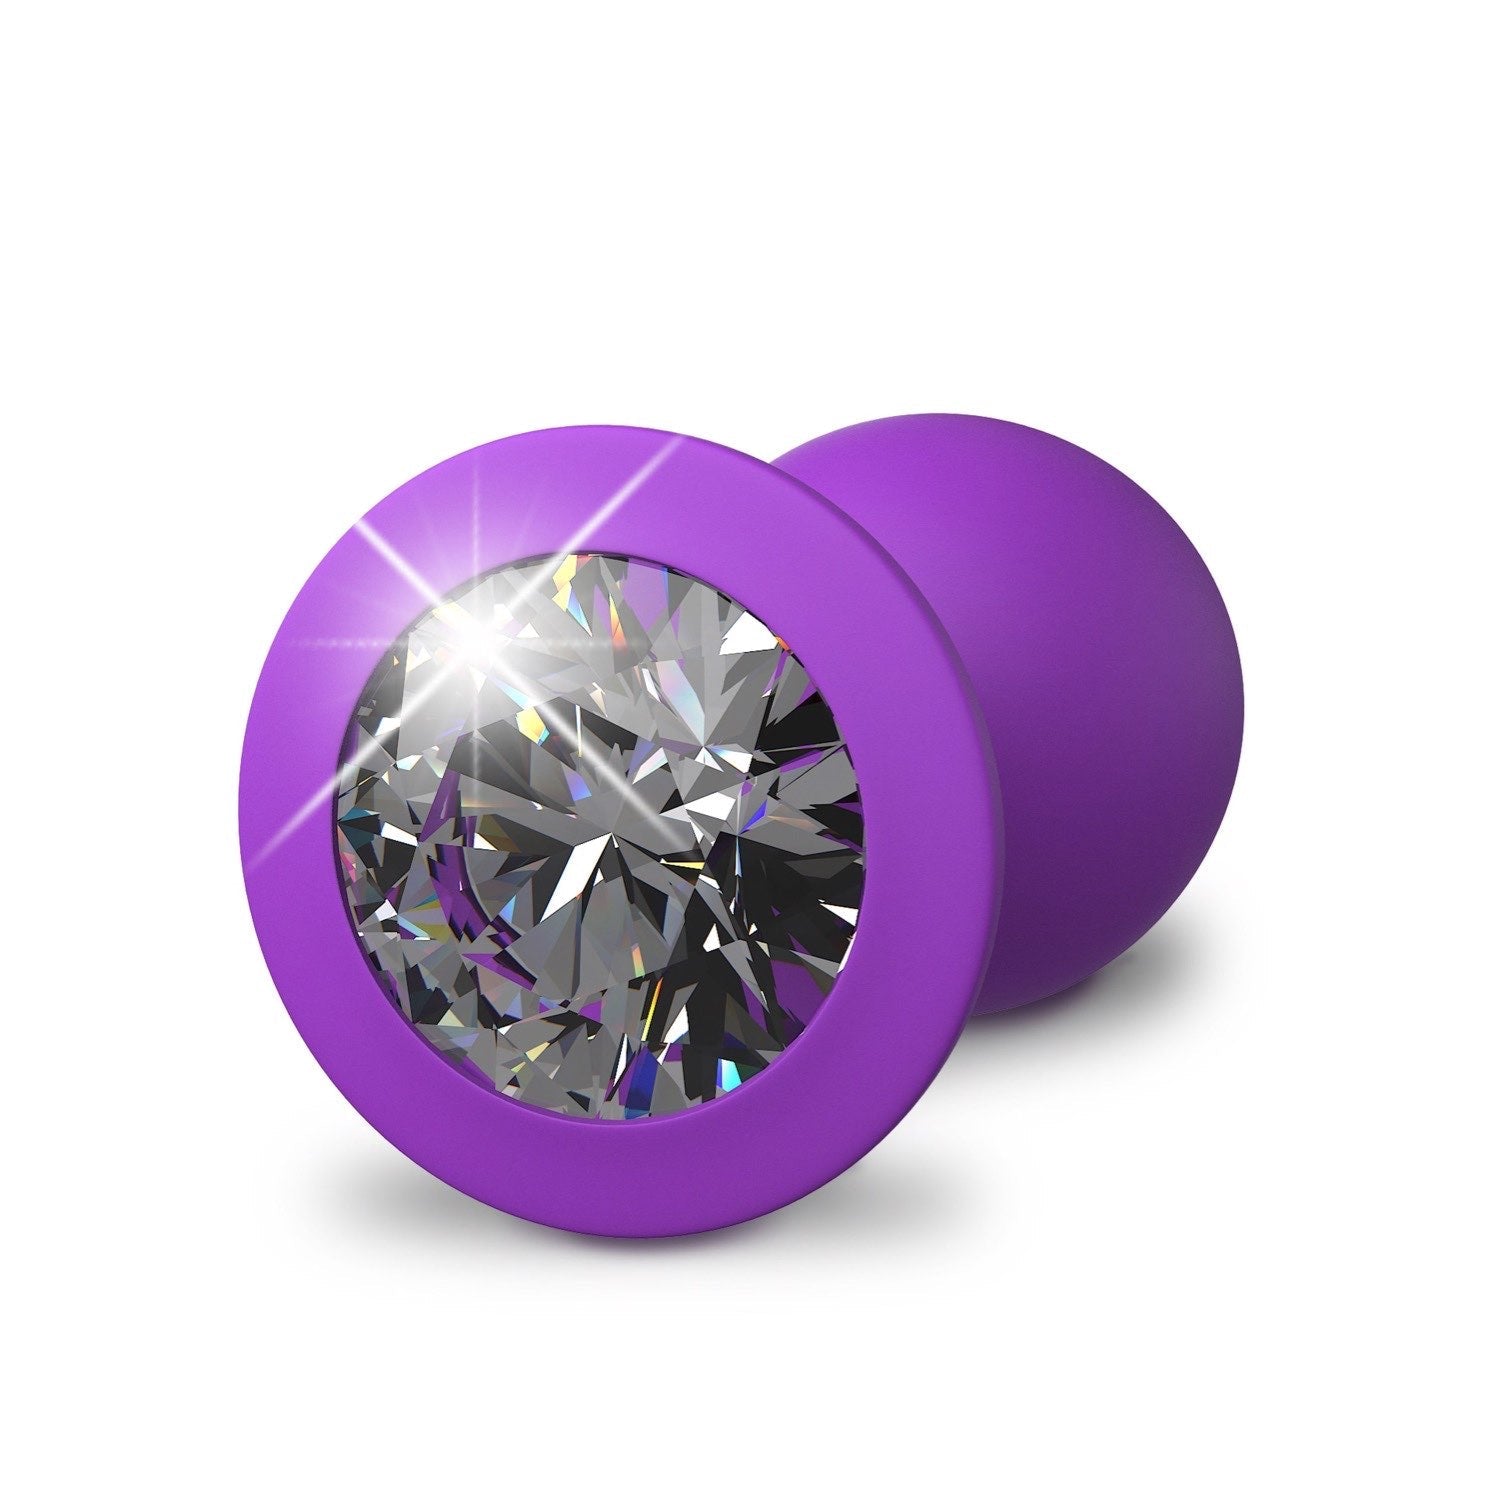 为她幻想 Little Gem 小插头 - 紫色 7.2 厘米对接插头，带宝石底座 by Pipedream